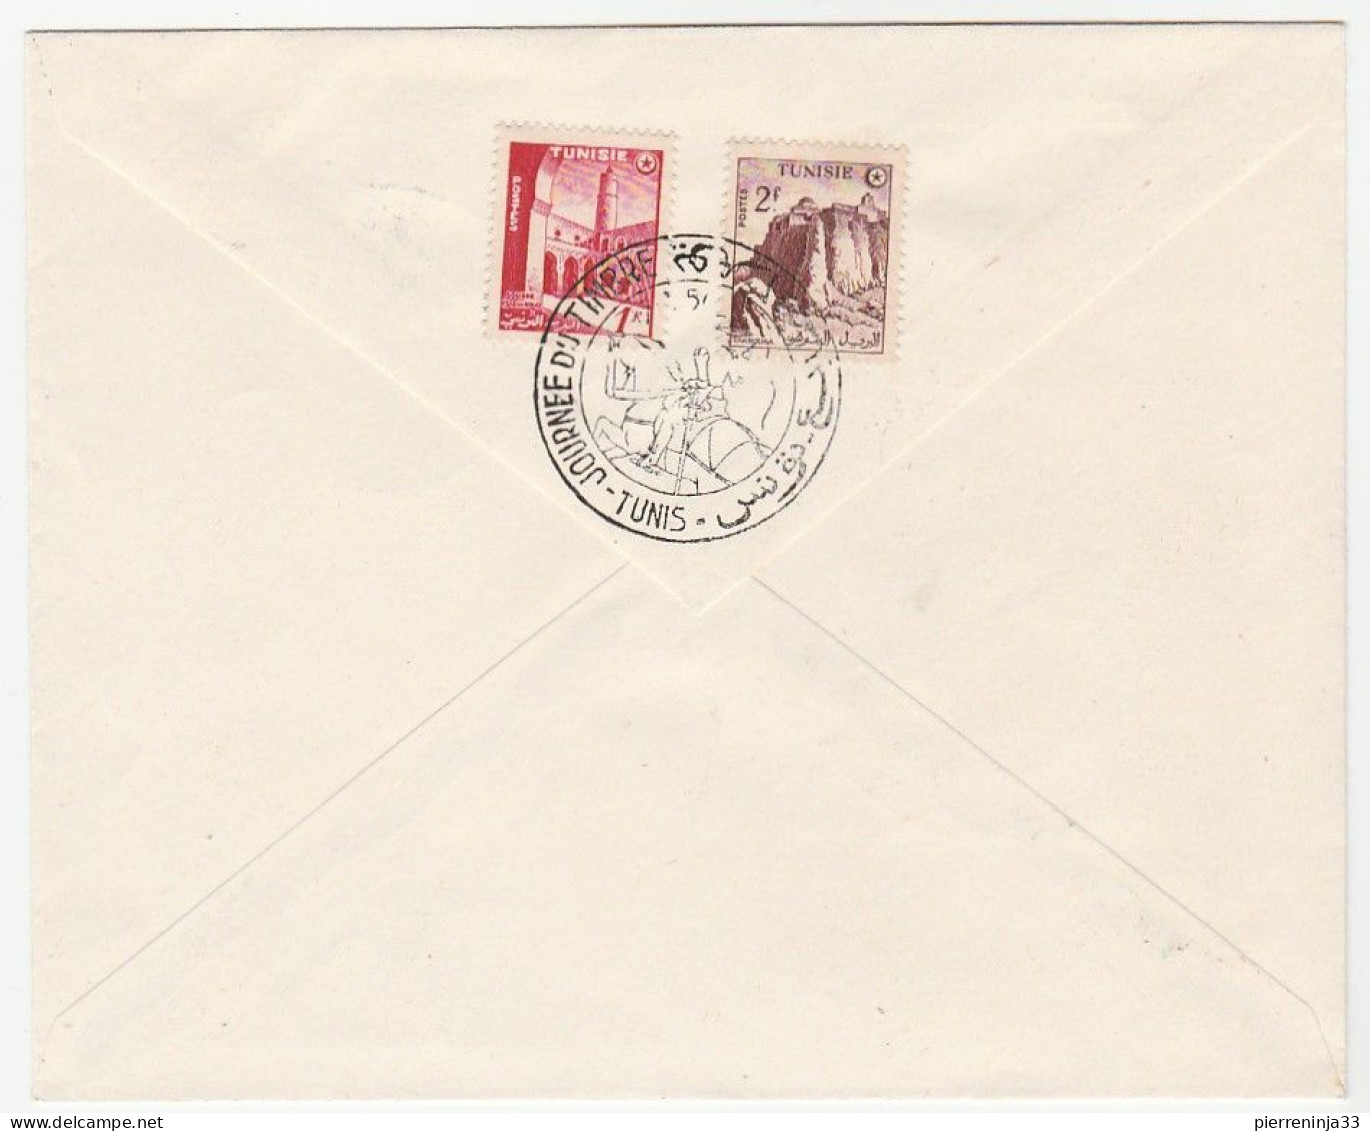 Lettre Journée Du Timbre 1956, Tunis - Lettres & Documents